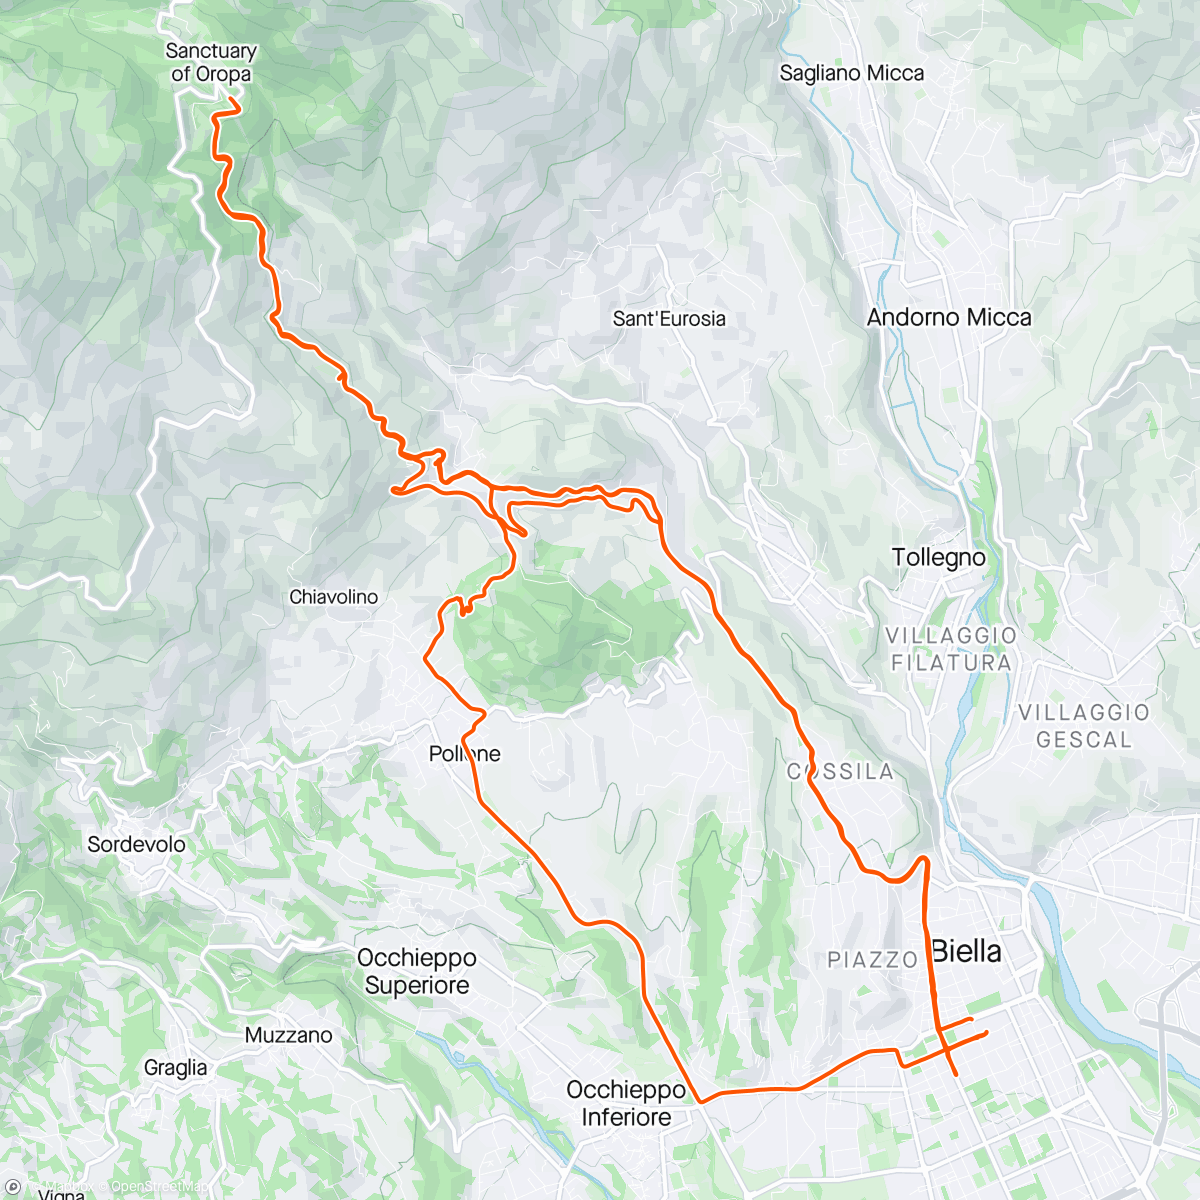 Map of the activity, Piemonte #6 - Santuario d'Oropa og Giro d'Italia